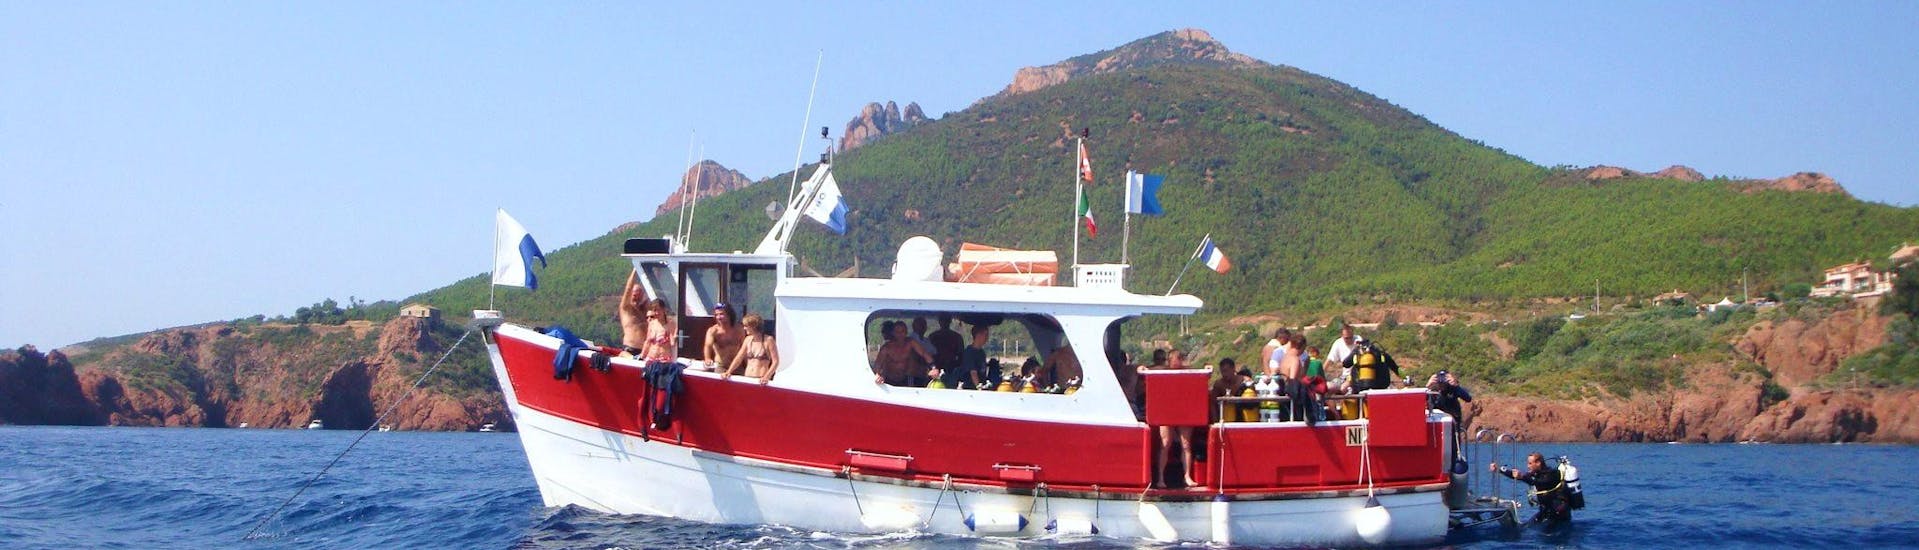 La nostra barca durante la Escursione con snorkeling vicino a Cannes.